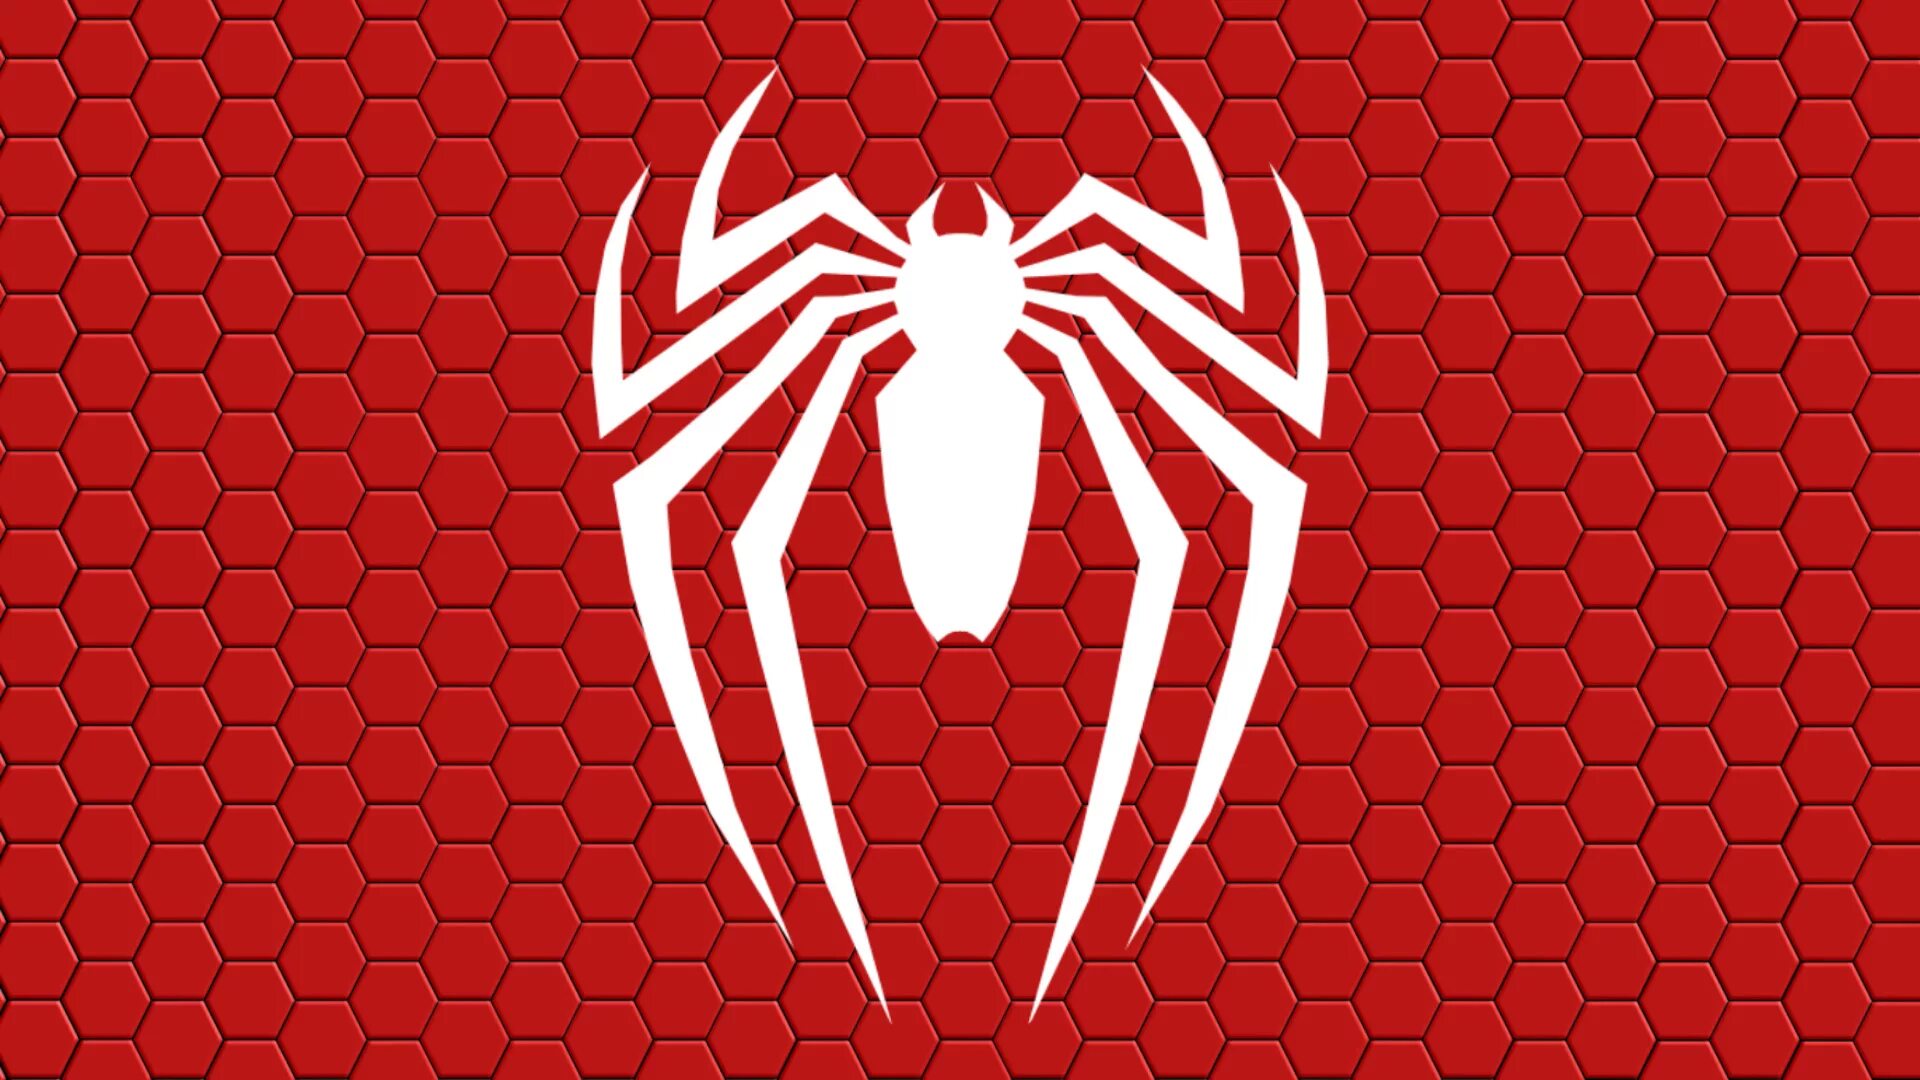 Марвел человек паук лого. Человек паук 2018 лого. Лого человека паука ps4. Человек паук пс4 логотип паука. Картинку спайдера